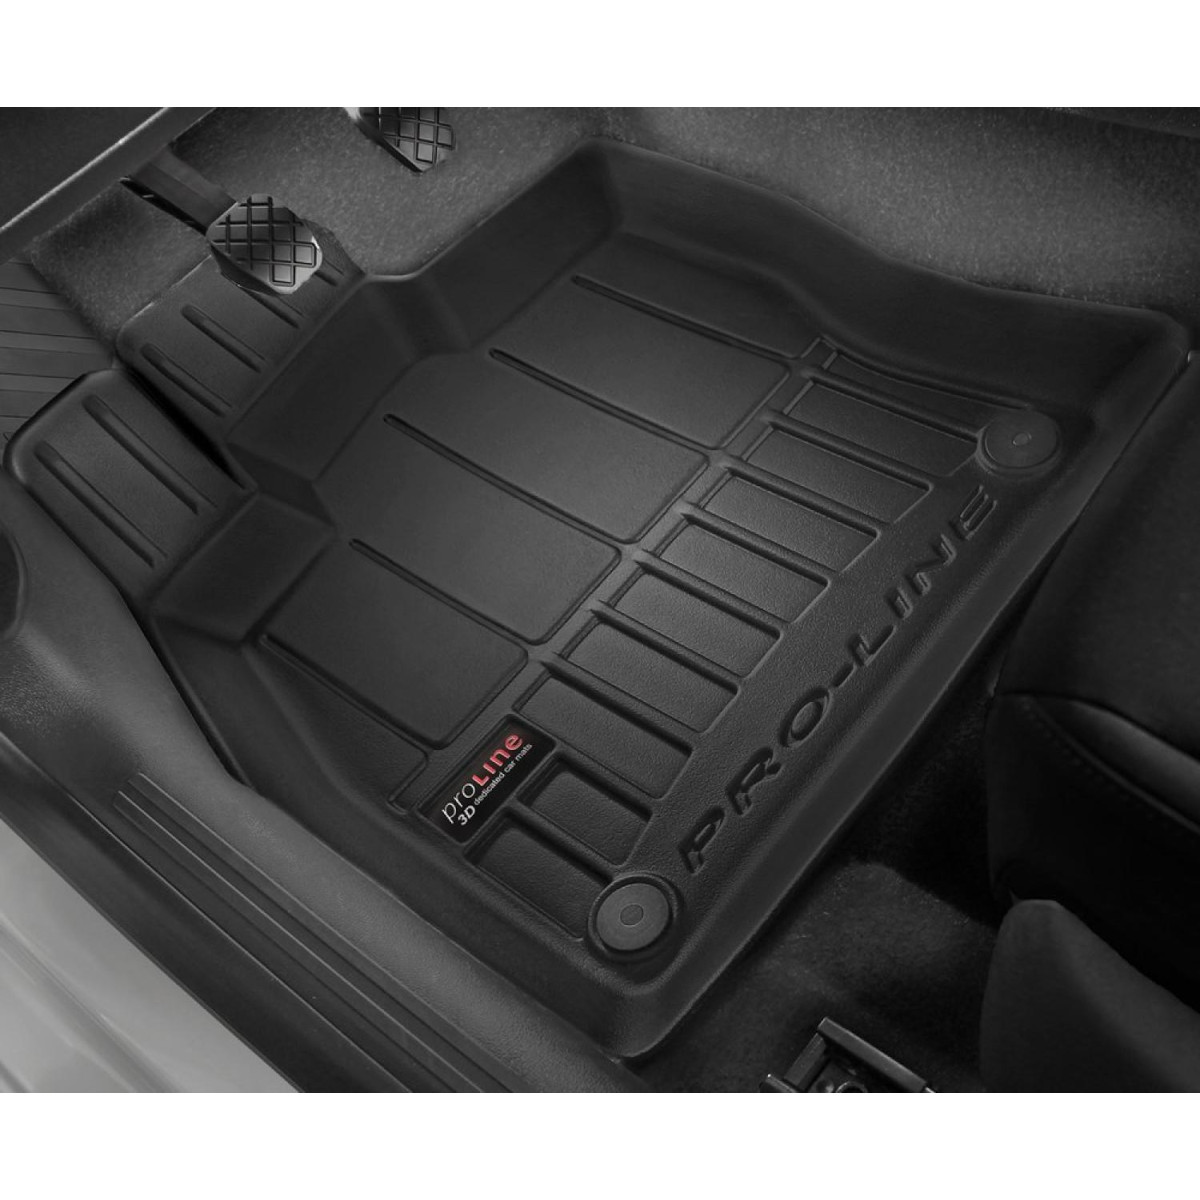 Guminiai kilimėliai Proline Audi Q3 II nuo 2018m. / paaukštintais kraštais